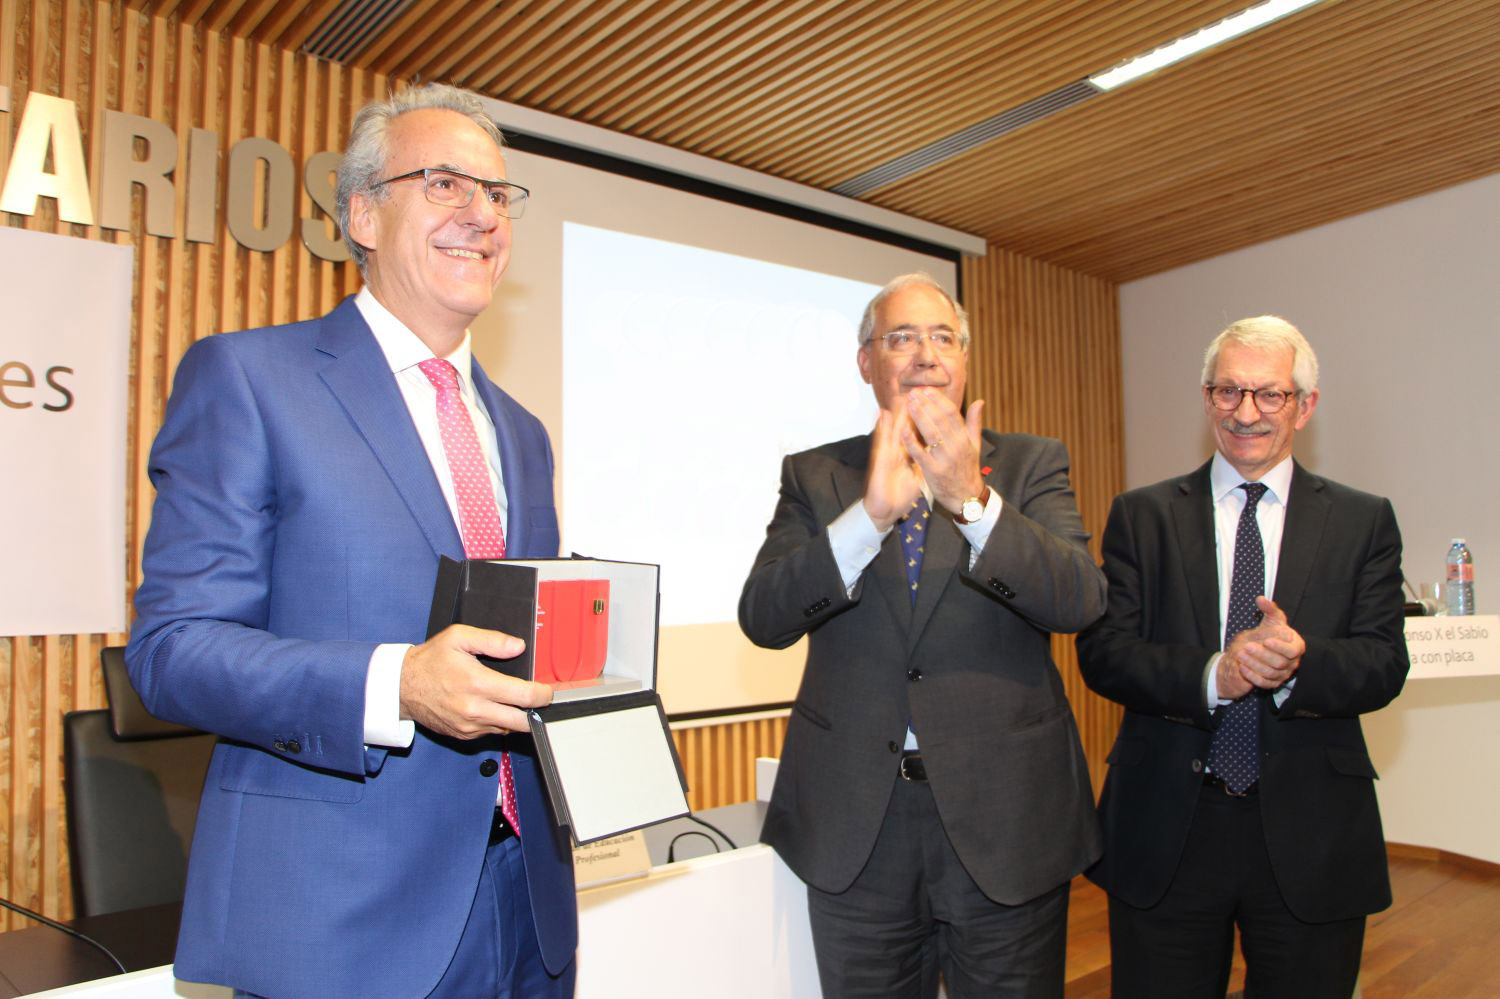 segundo-piriz-recibe-la-medalla-de-oro-de-crue-universidades-espanolas